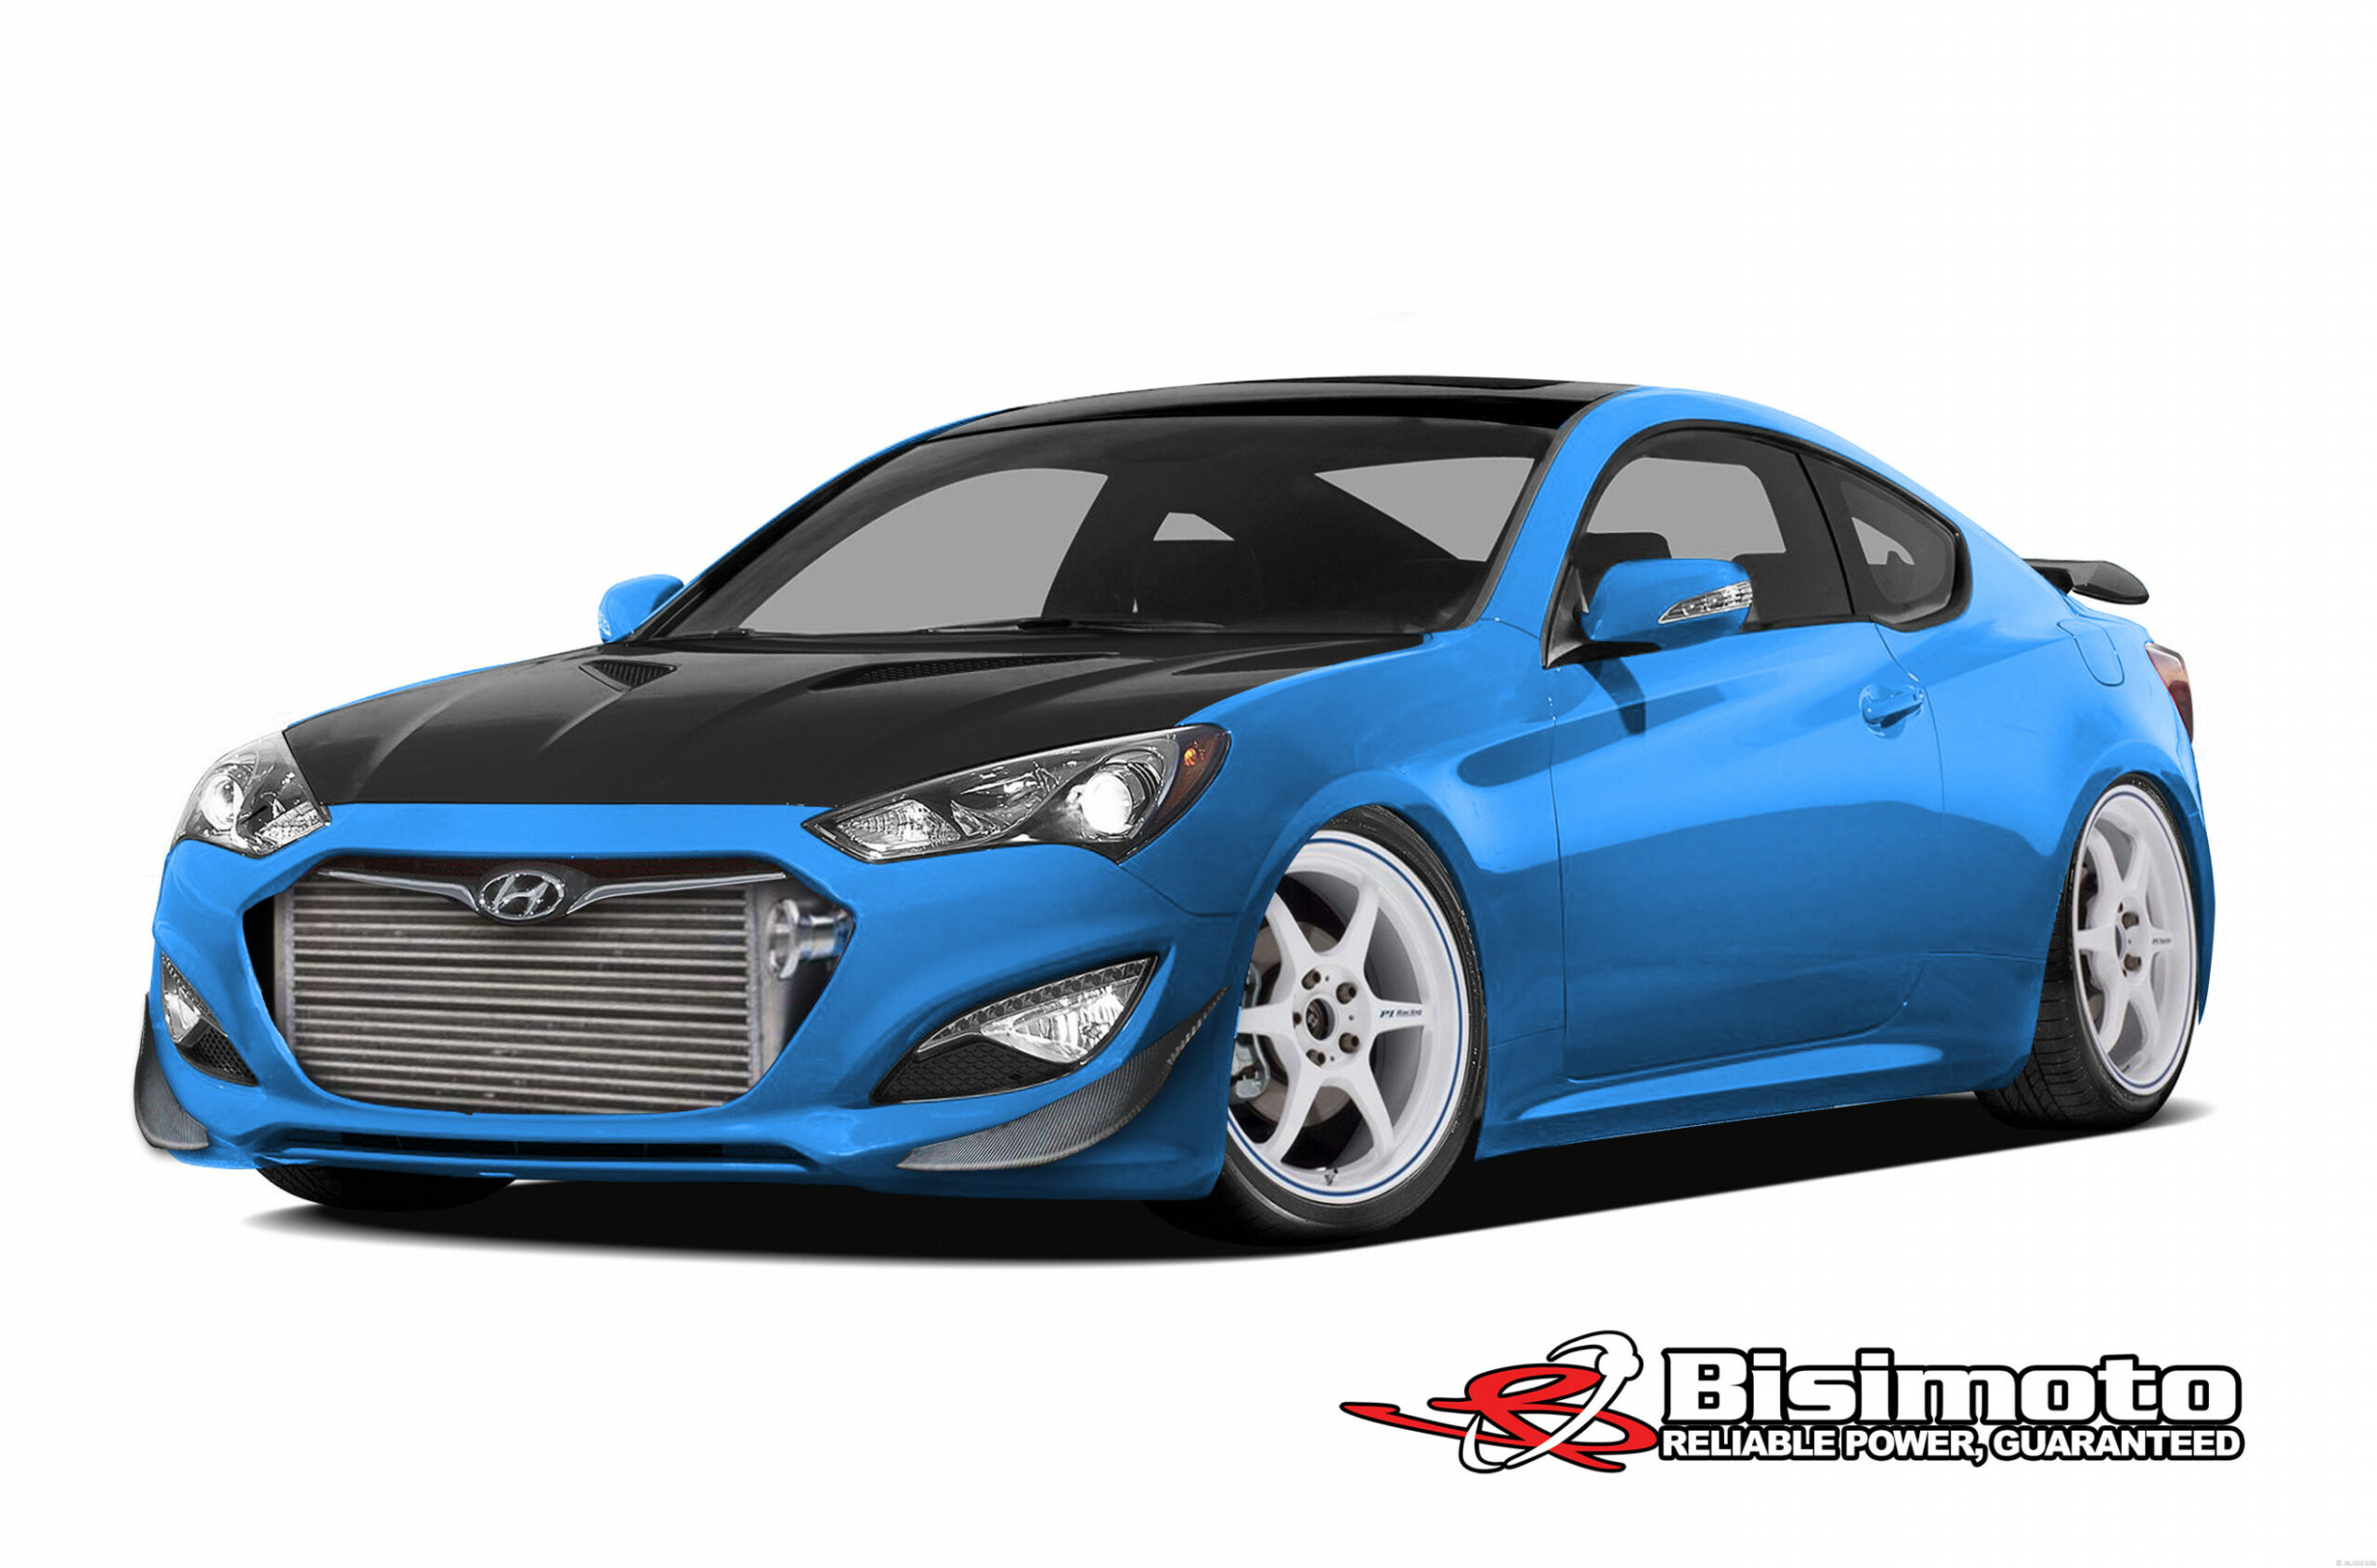 SEMA 10: Bisimoto Engineering Hyundai Genesis Coupe